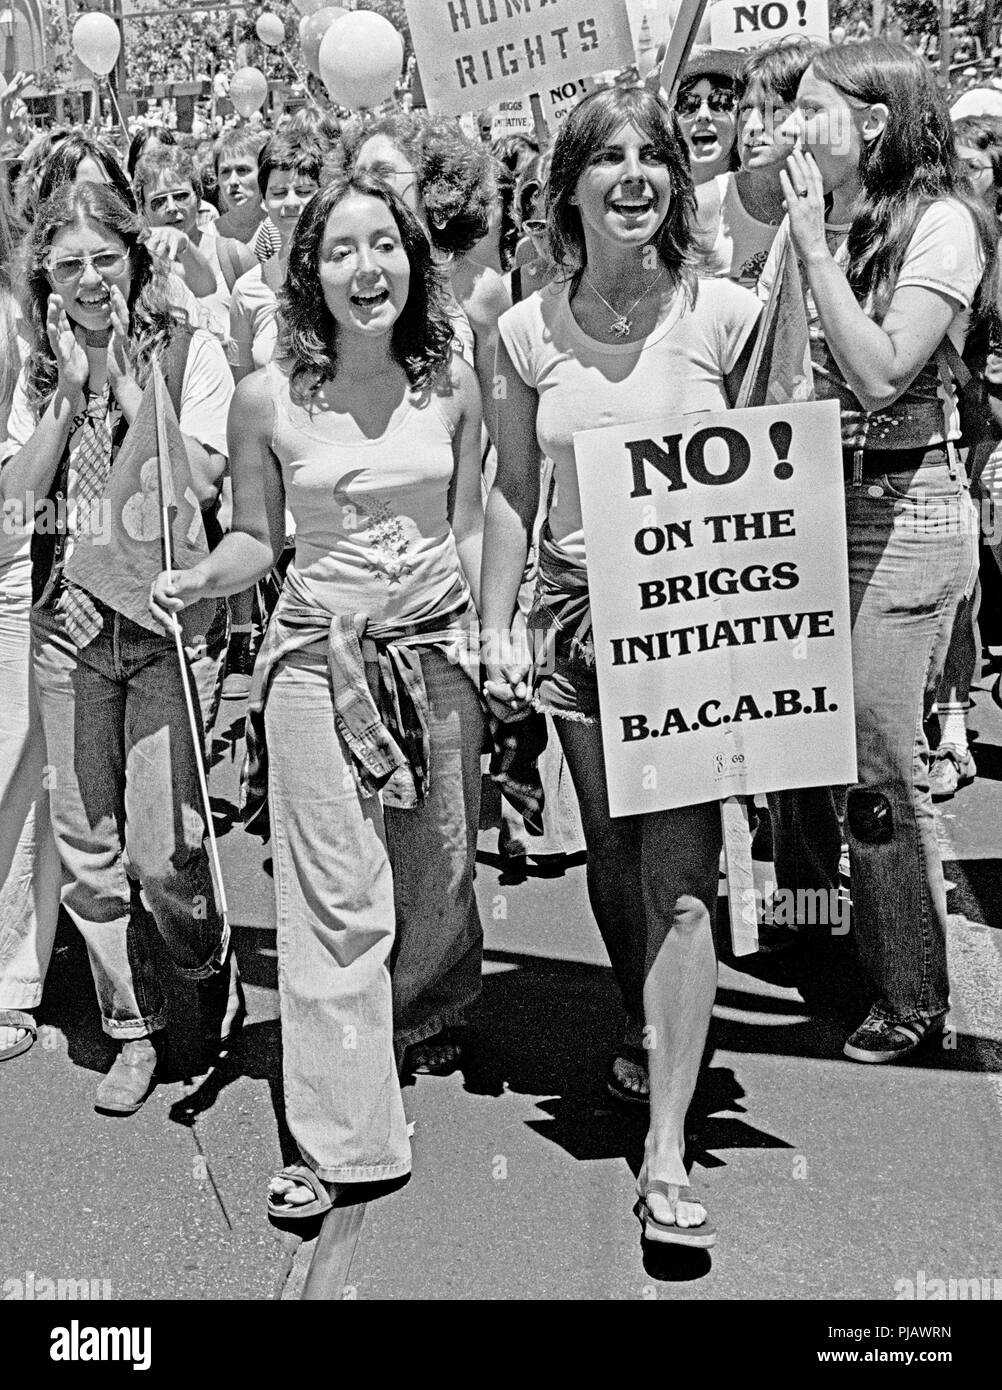 Demonstranten protestieren gegen die Anti gay Briggs Initiative, Proposition 6, in San Francisco, Kalifornien in den 1970er Jahren Stockfoto